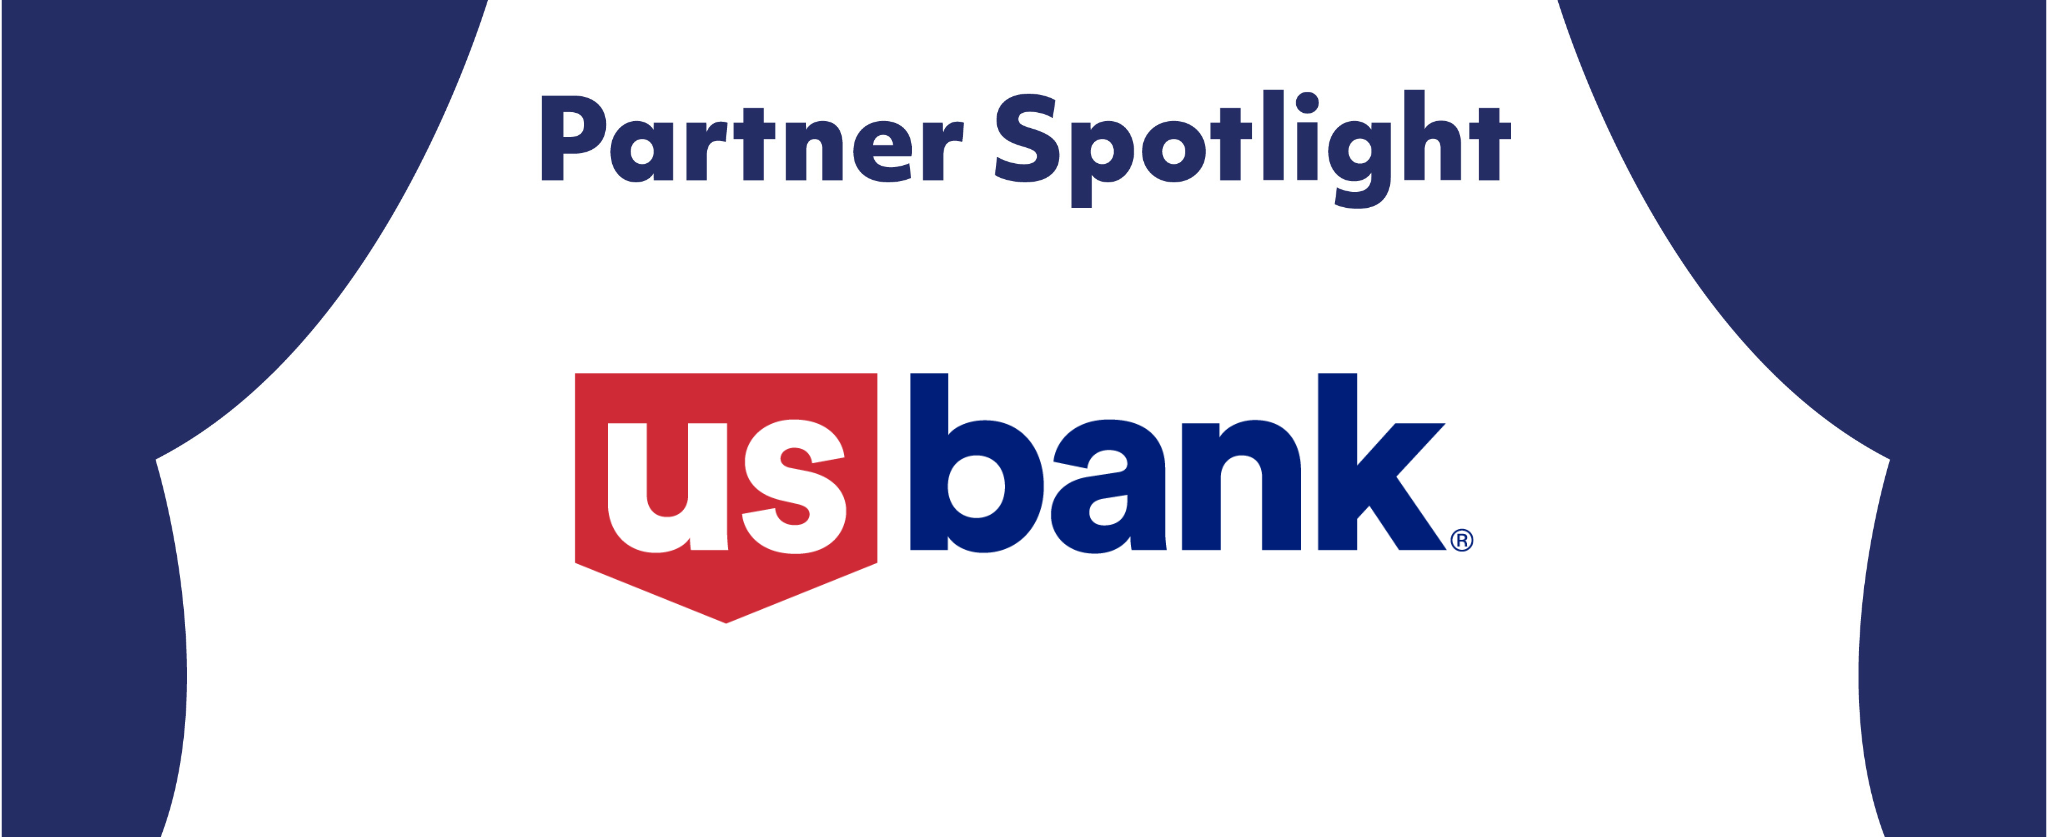 Partner Spotlight: US Bank